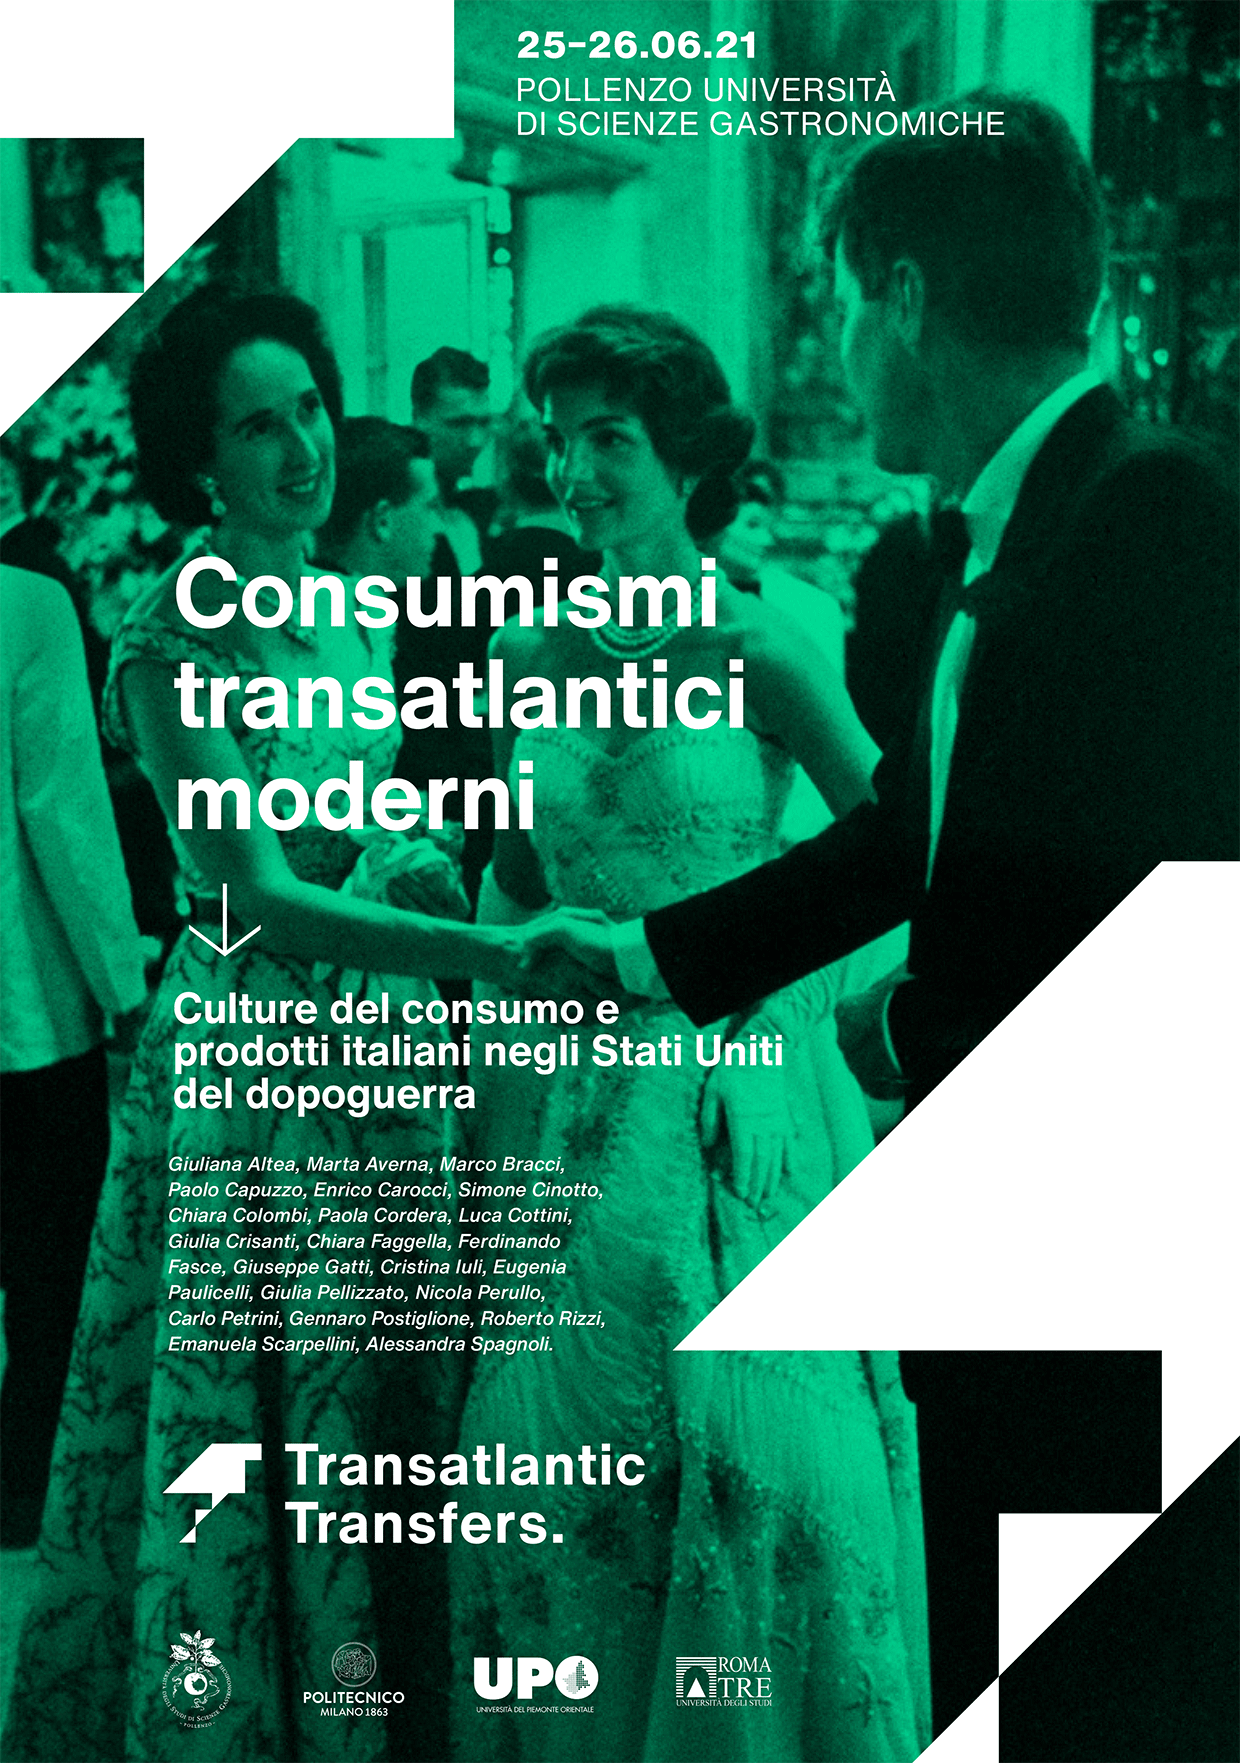 Transatlantic Modern Consumerisms CULTURE DEL CONSUMO E PRODOTTI ITALIANI NEGLI STATI UNITI DEL DOPOGUERRA, 1949-1972